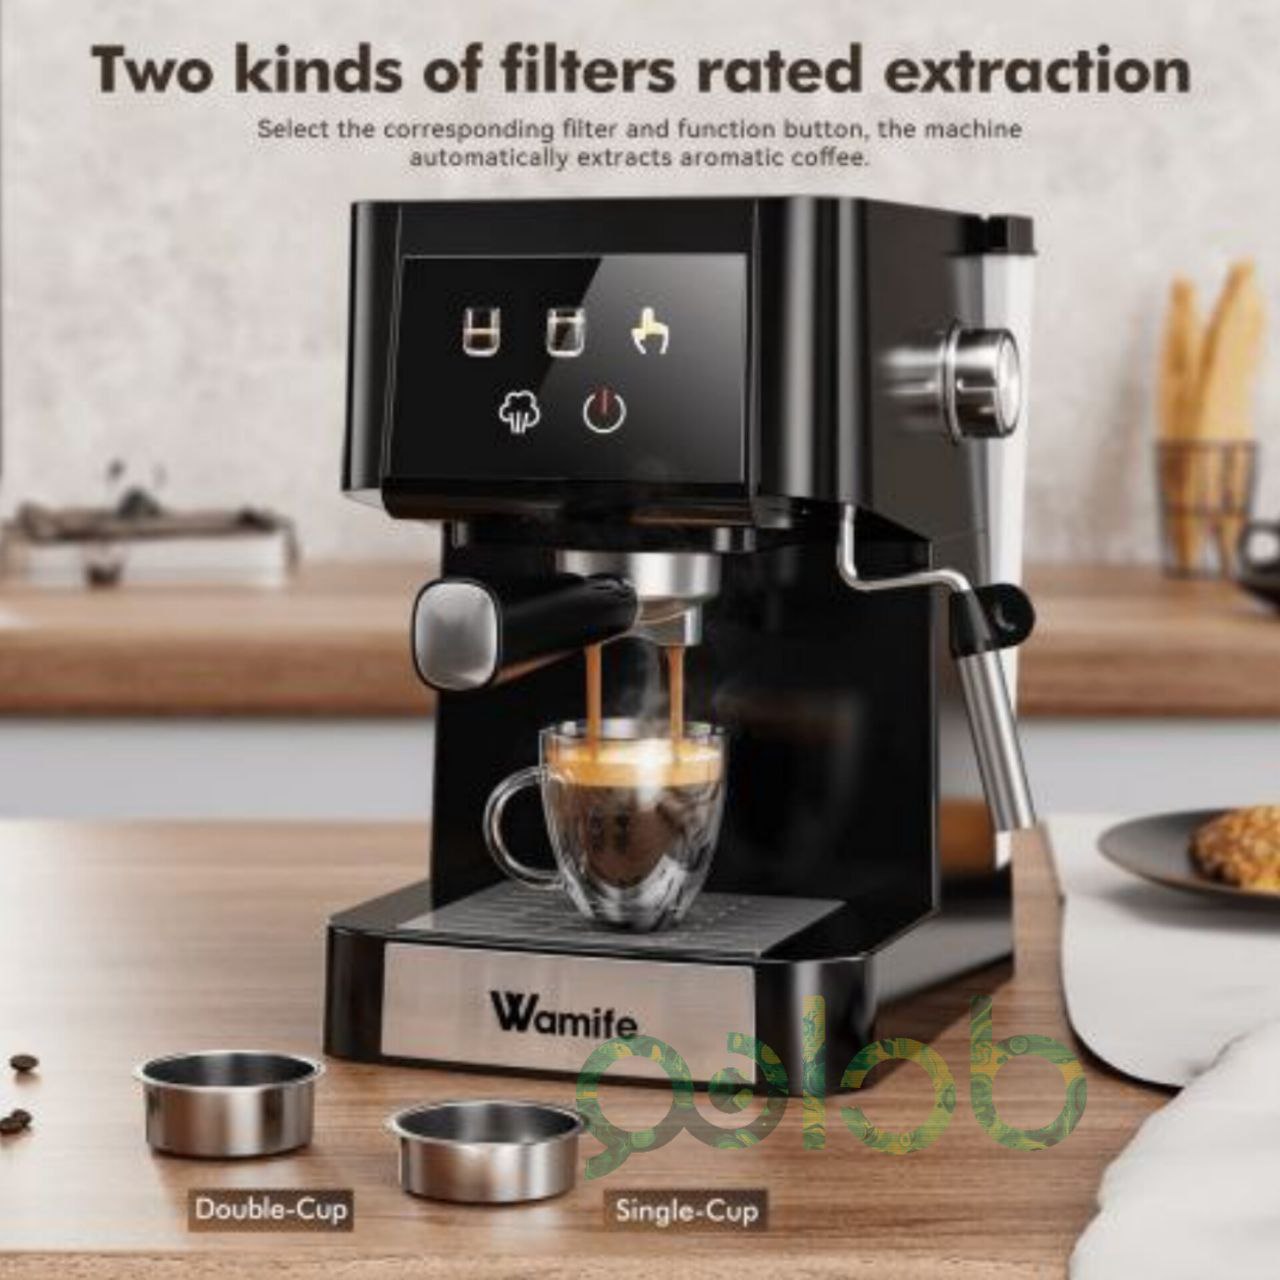 Fancy a fresh cup o coffee? Wamife Espresso Machine makes all